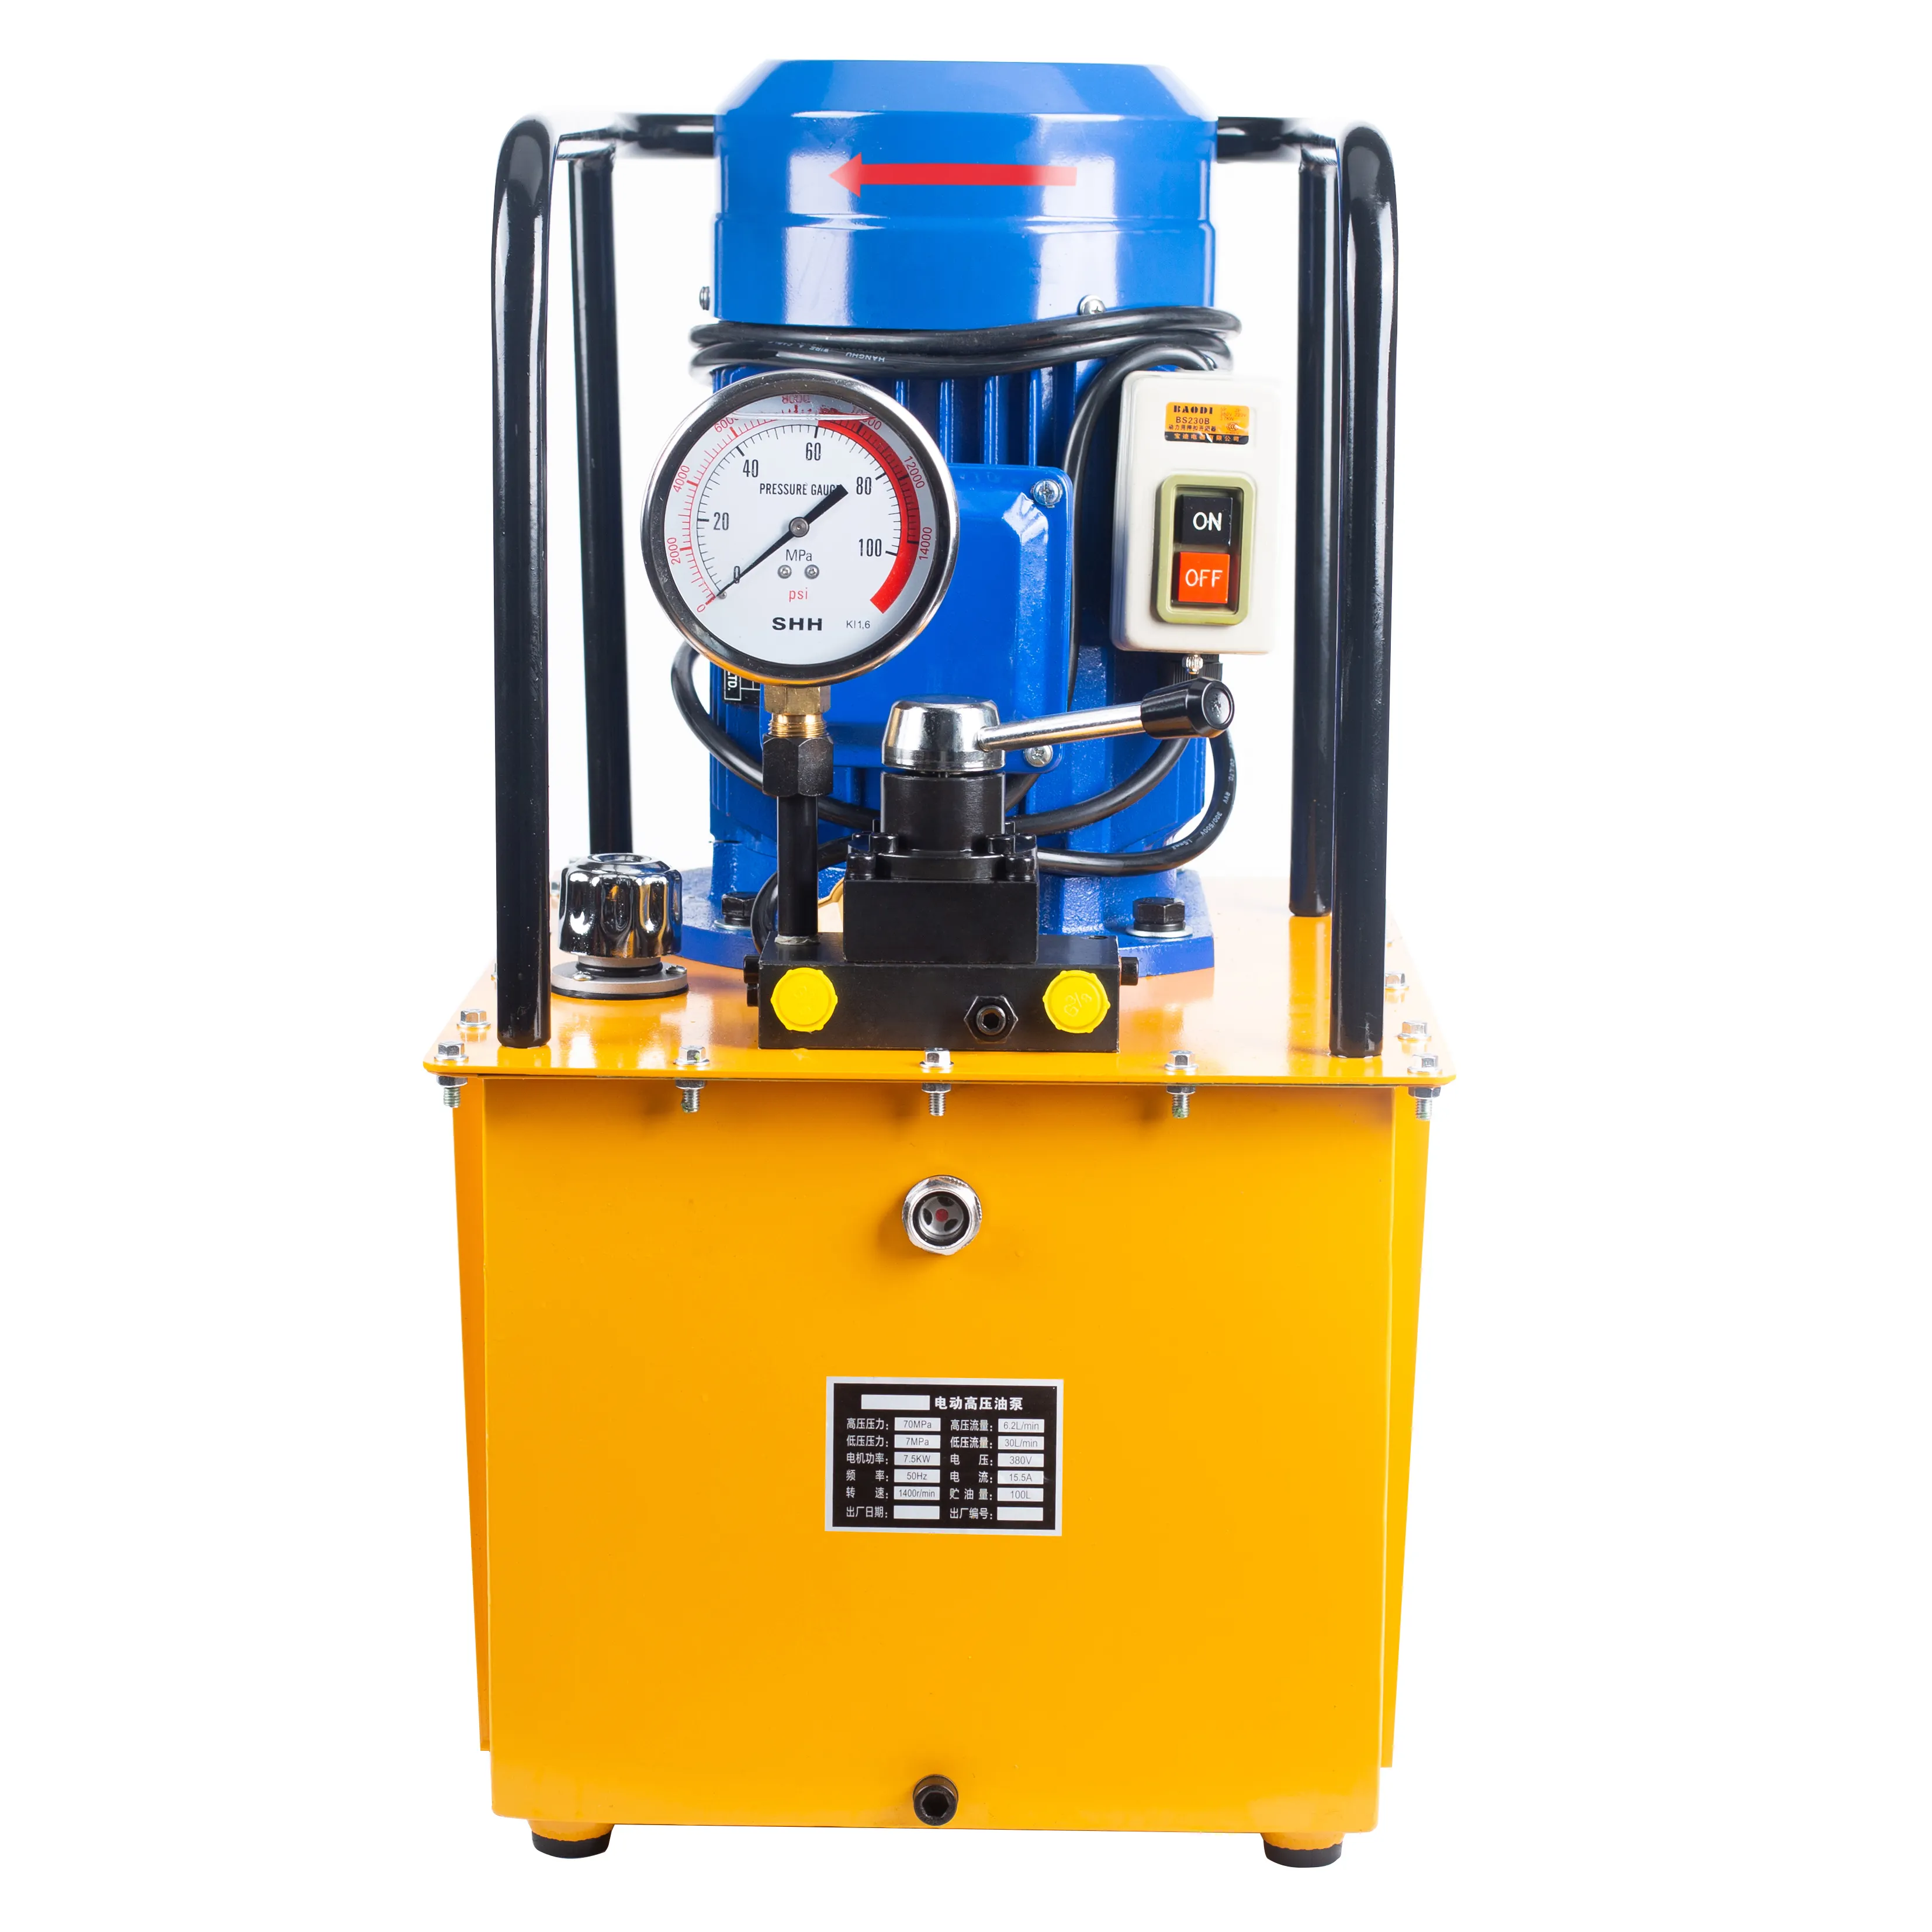 Beste 10000psi Elektrische Hydraulik pumpe für Hydraulik werkzeuge Tragbares Kraftwerk für Hydraulik werkzeuge